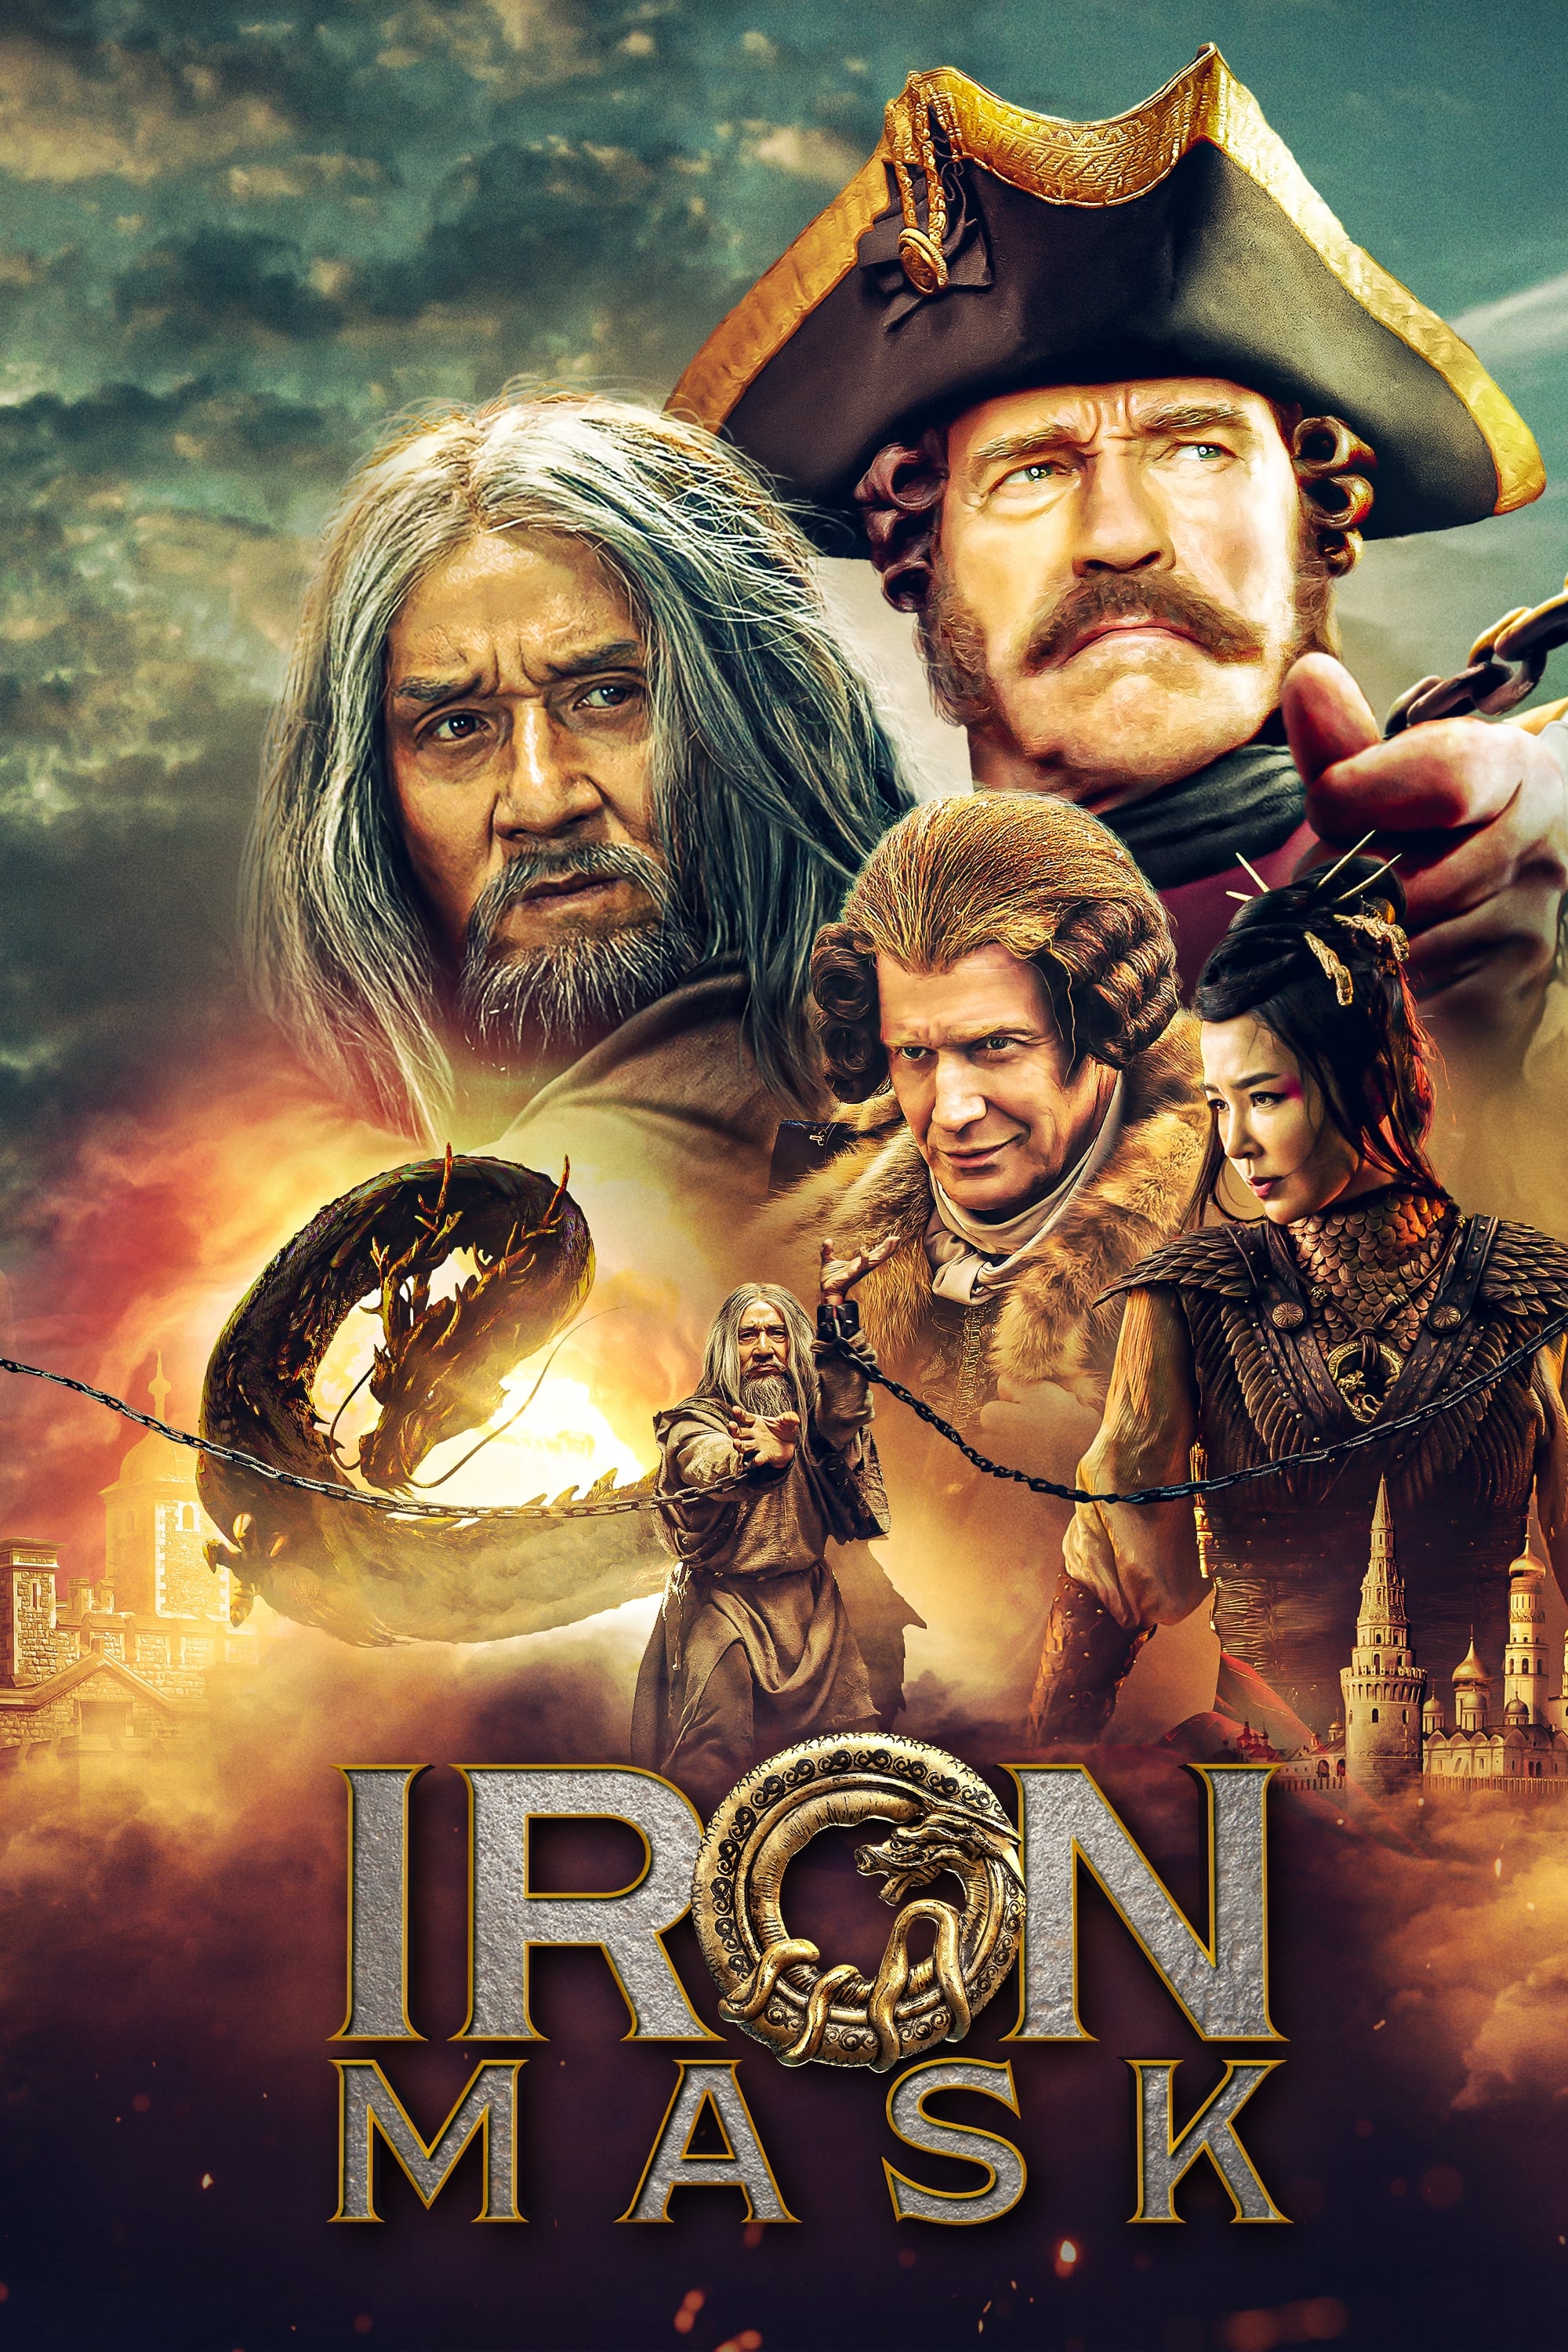 Iron Mask (2019)